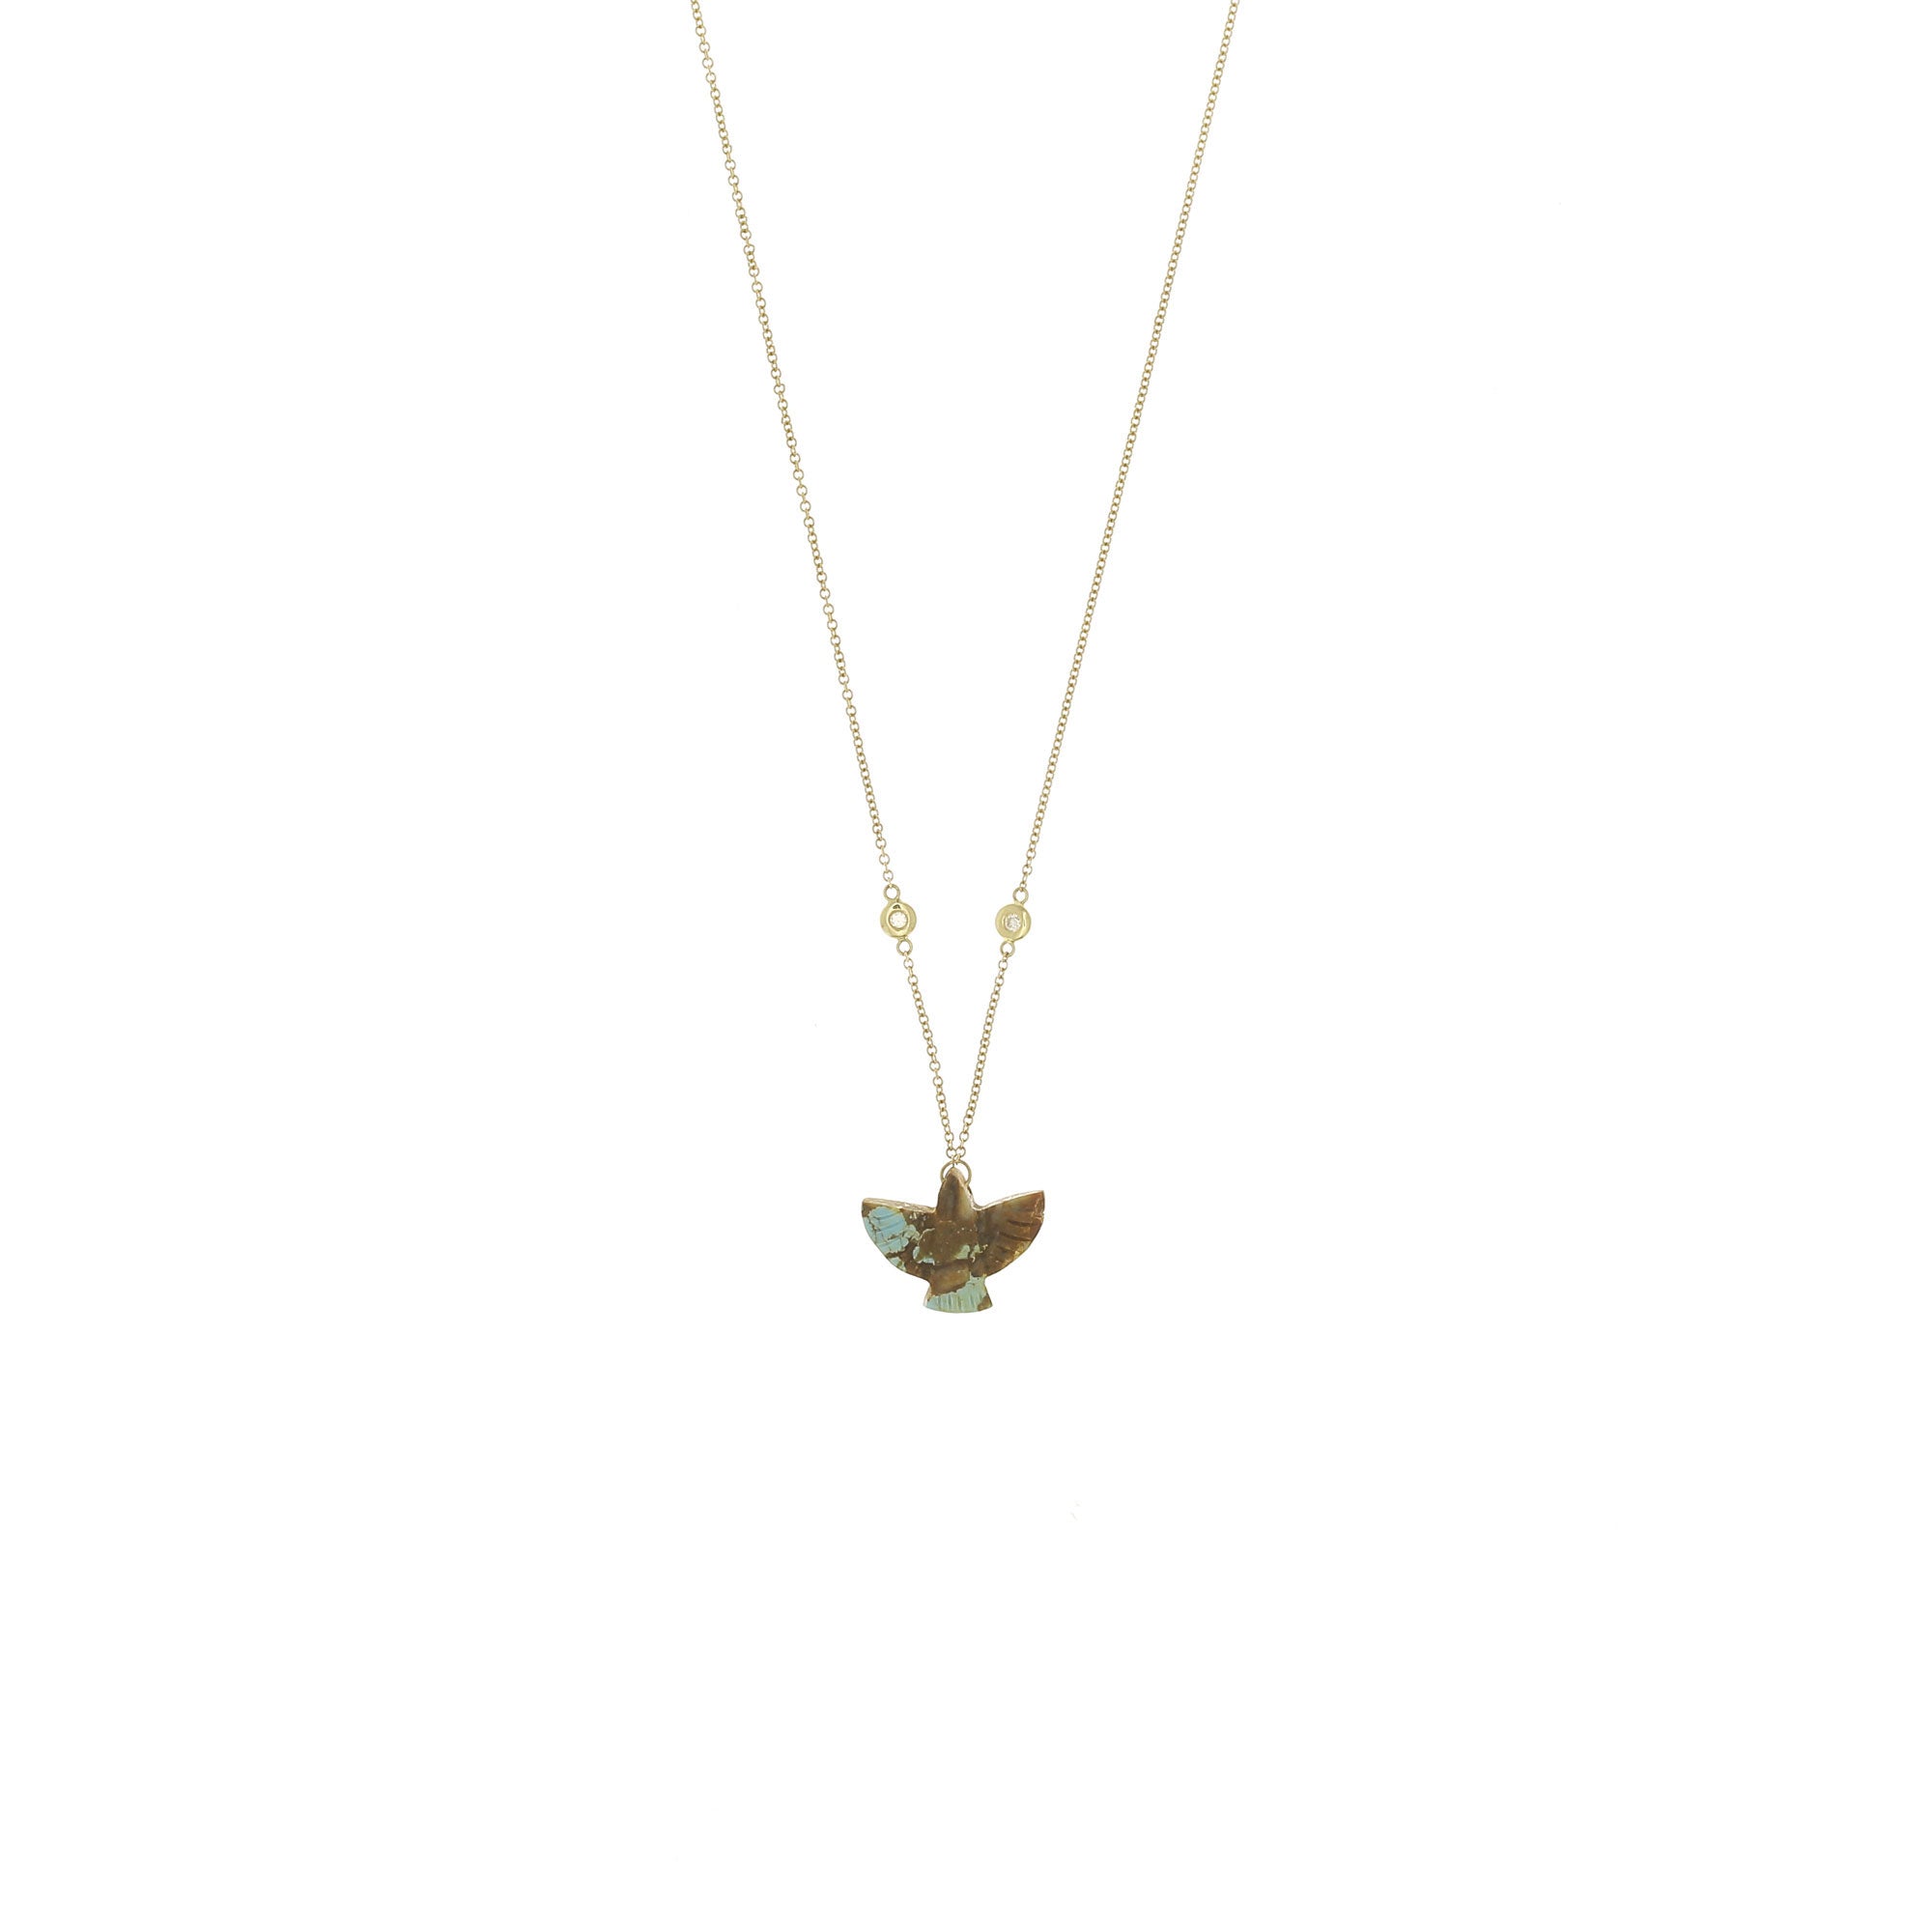 Thunderbird Baby Turquoise Necklace